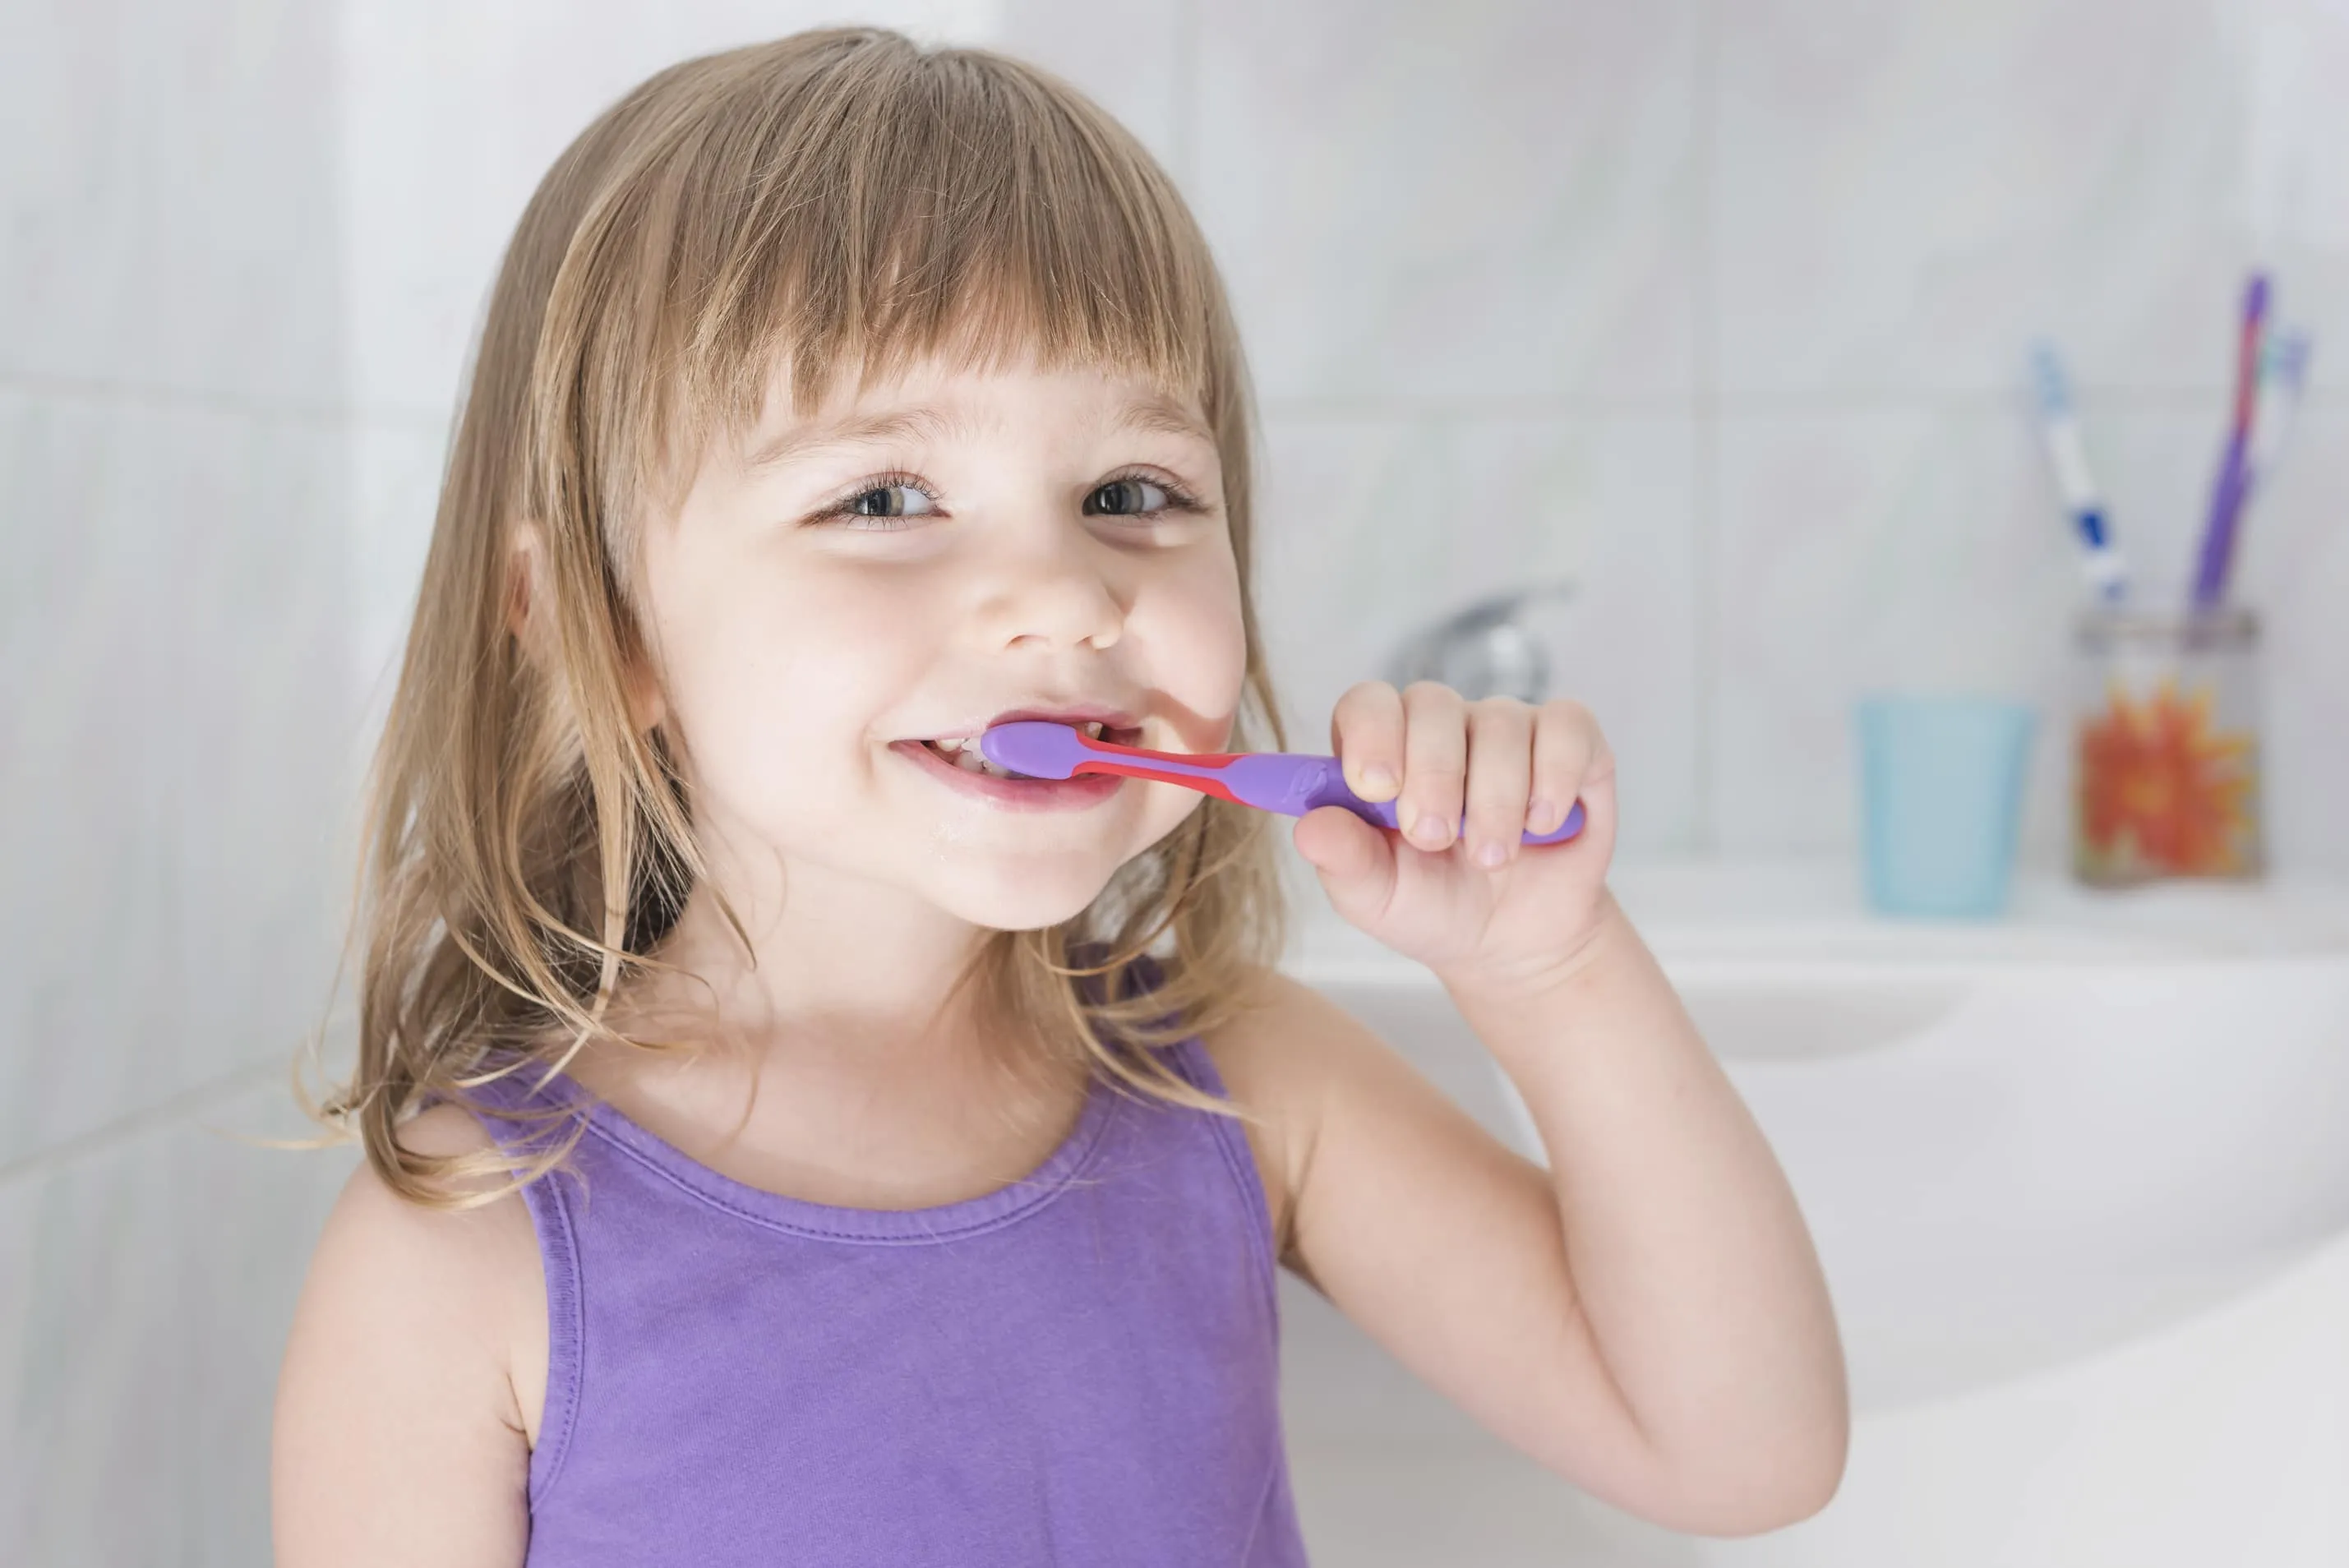 Răng trẻ em đẹp khi ba mẹ xây dựng thói quen chăm sóc răng miệng cho bé